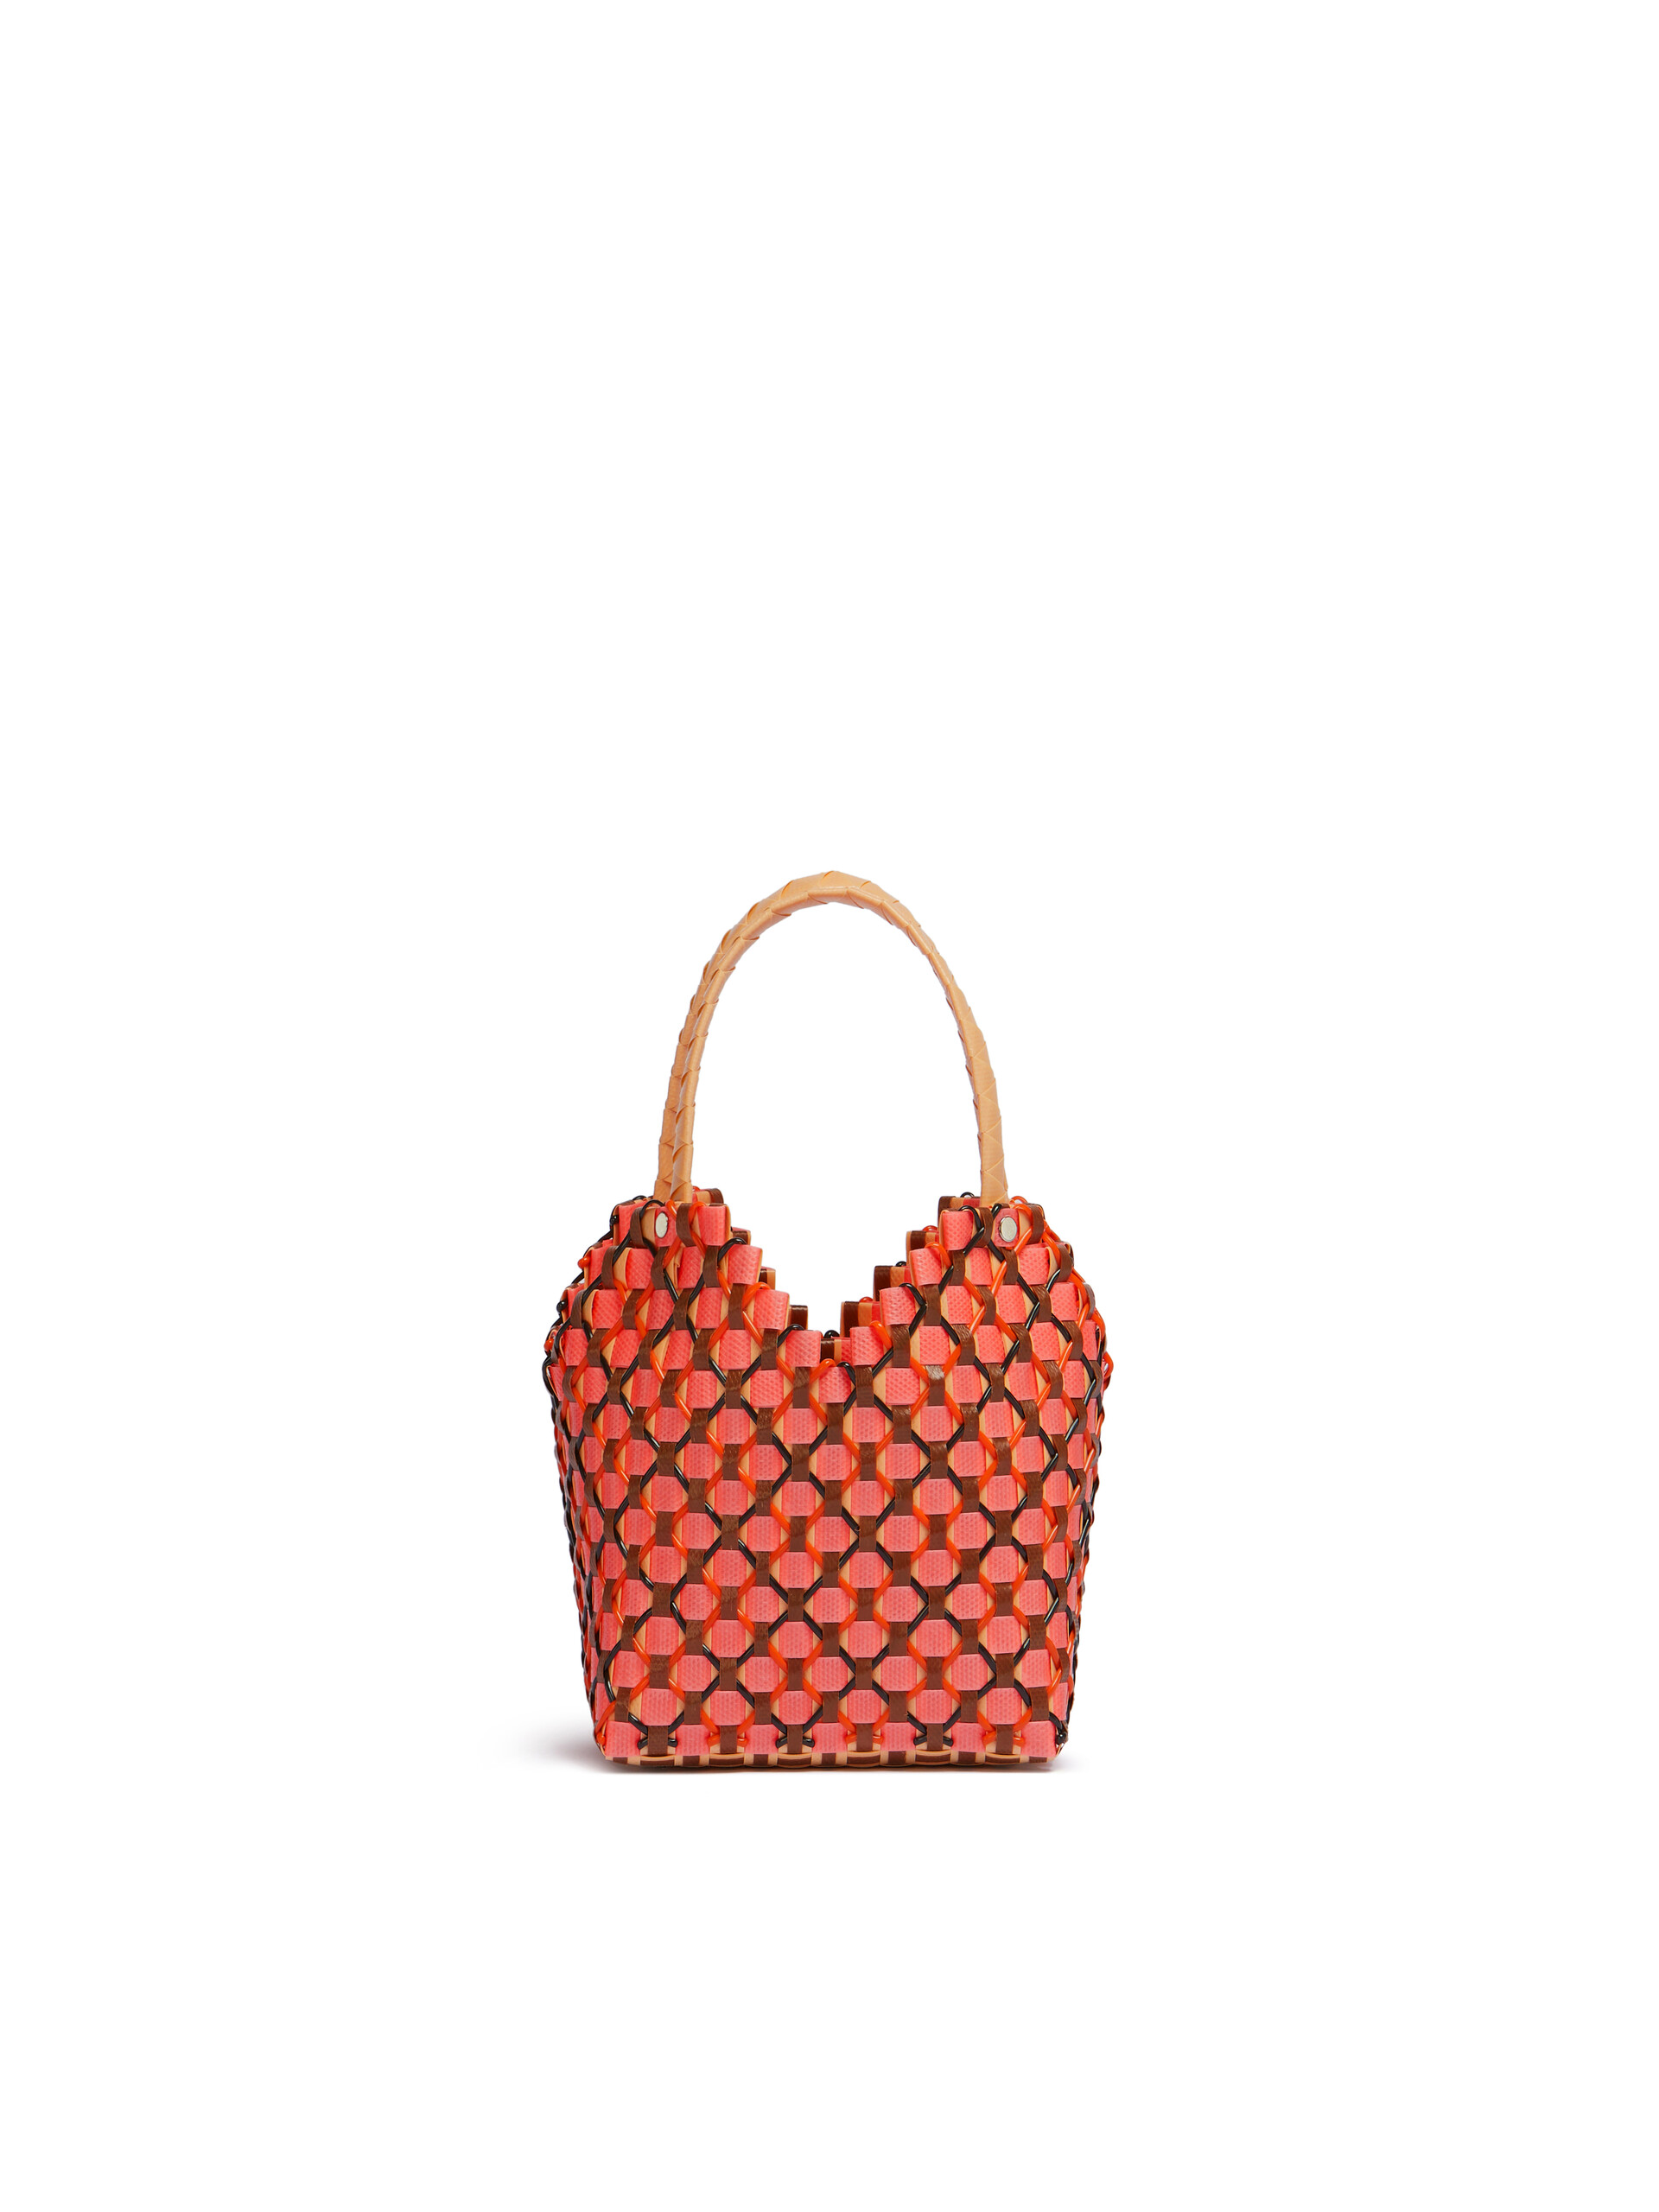 Peach Marni Market Love 2 Bag - Shopping Bags - Image 3